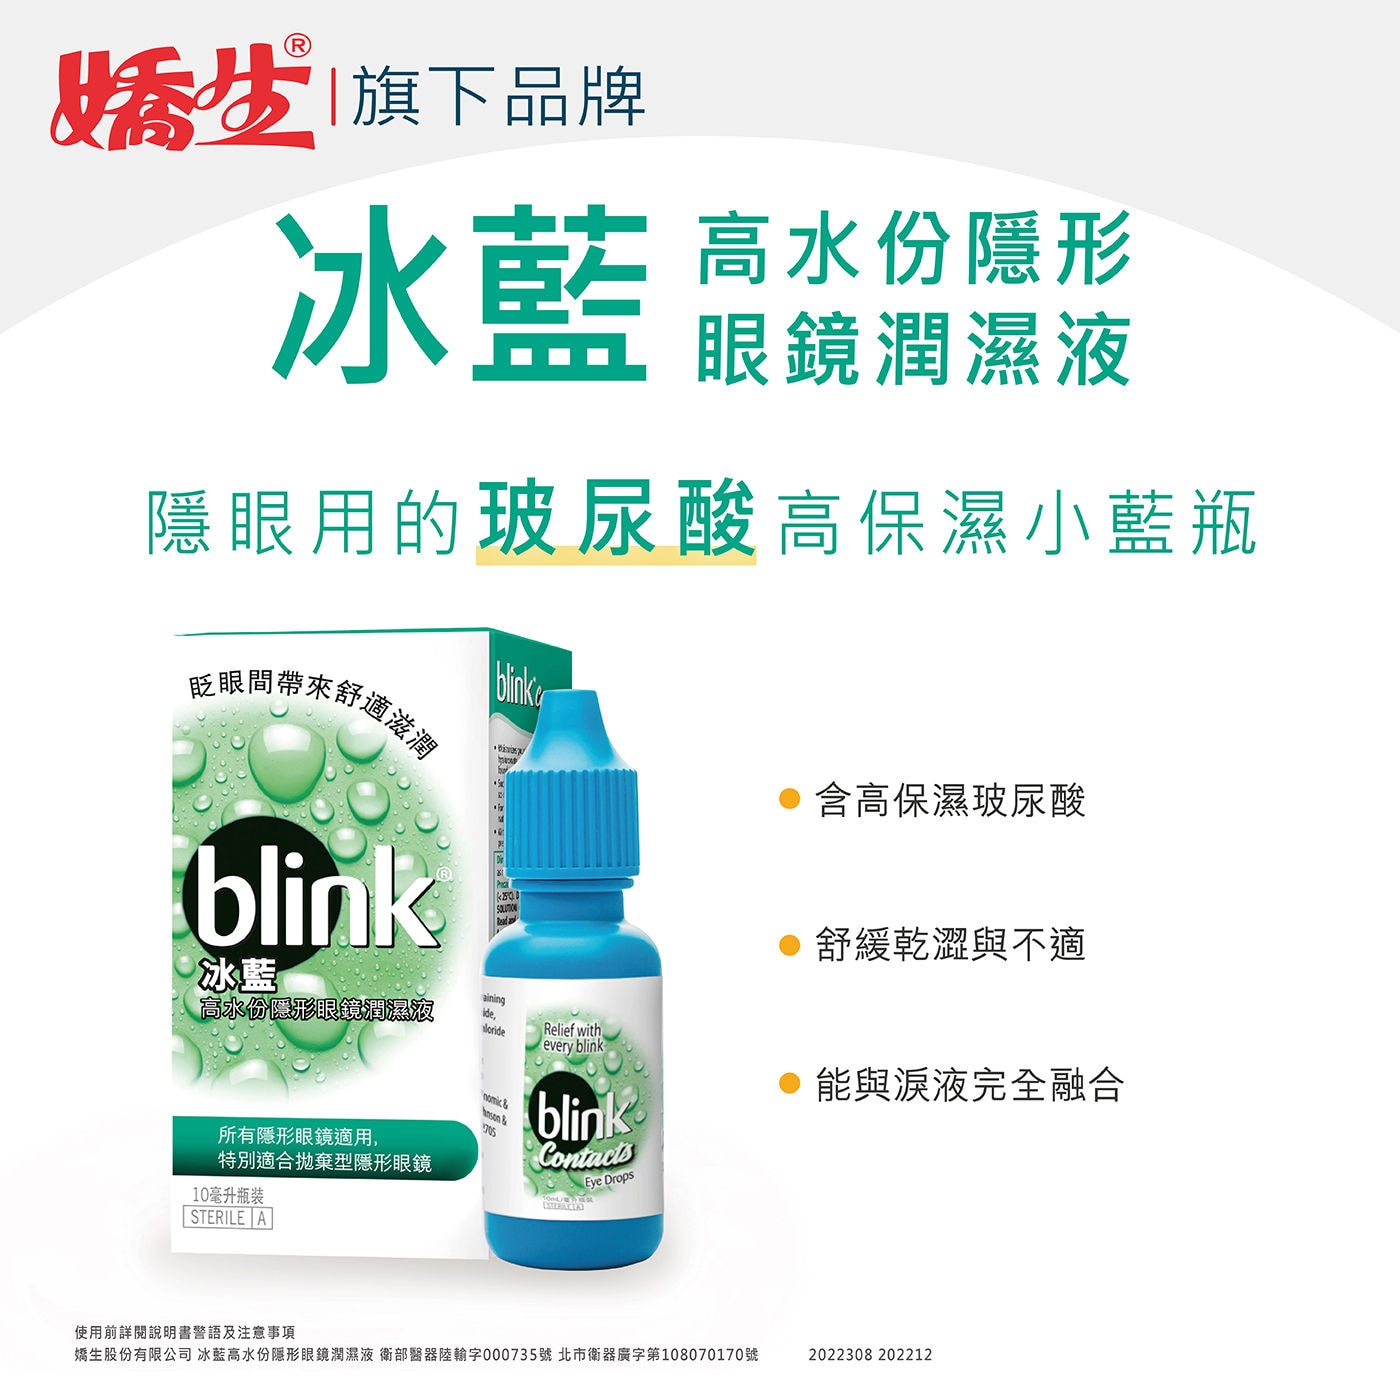 Blink 冰藍高水份隱形眼鏡潤濕液隱眼用的玻尿酸，高保濕小藍瓶，有效舒緩因隱形眼鏡所致的乾澀與不適，配方含有人體淚液中重要的電解質，能與淚液完全融合。